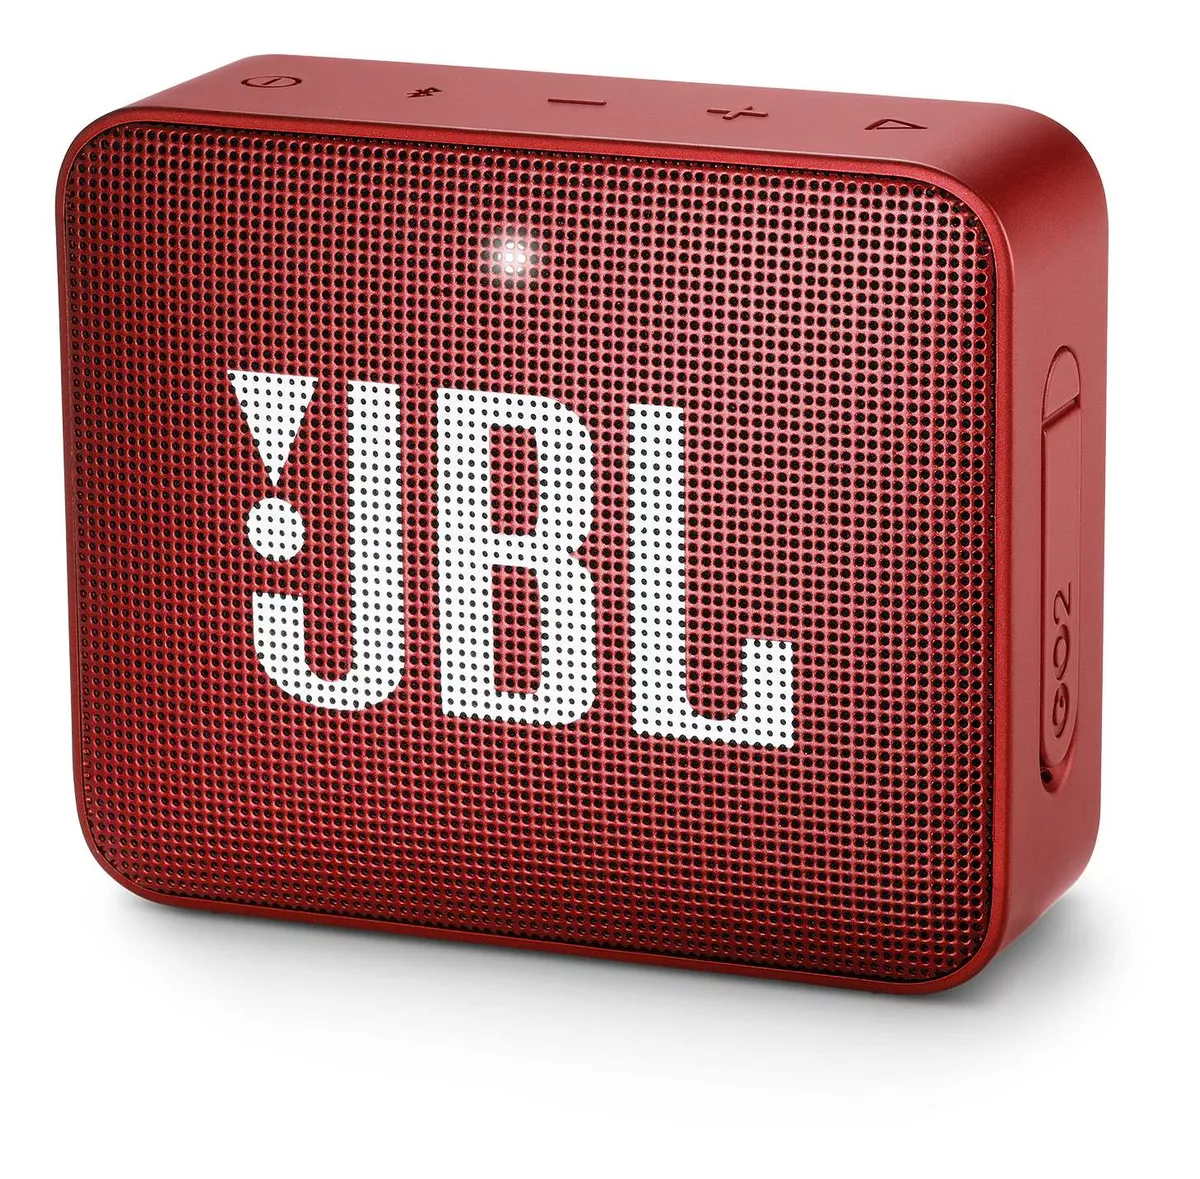 Parlante Jbl Go 2 Portátil Con Bluetooth Ruby Red 110v/220v